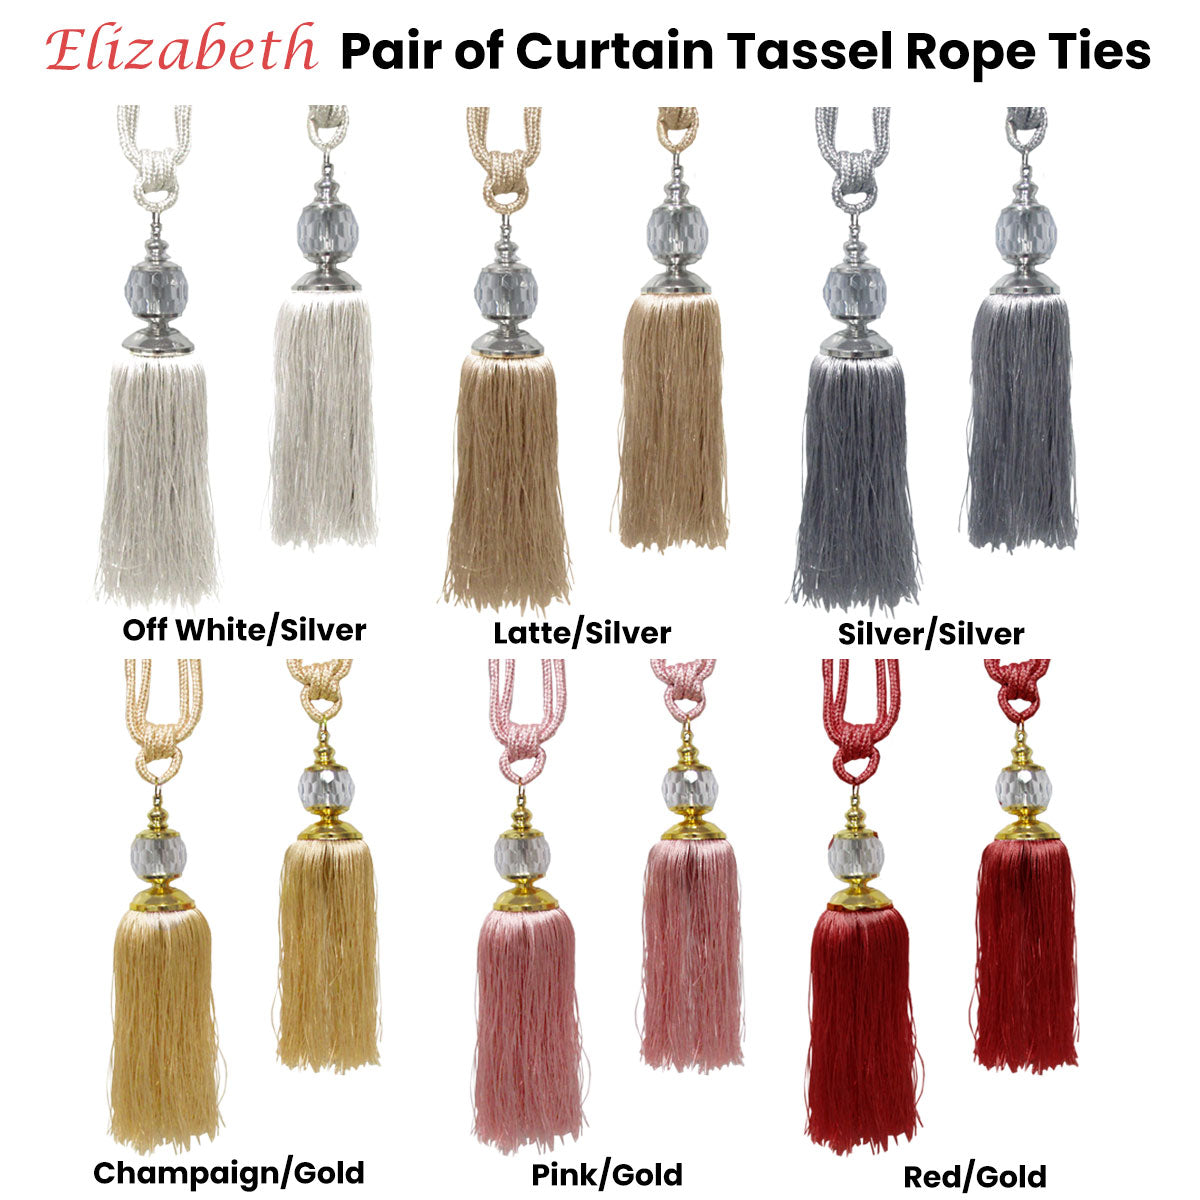 Elizabeth Pair of Curtain Tassel Rope Ties Champagne/Gold - SILBERSHELL